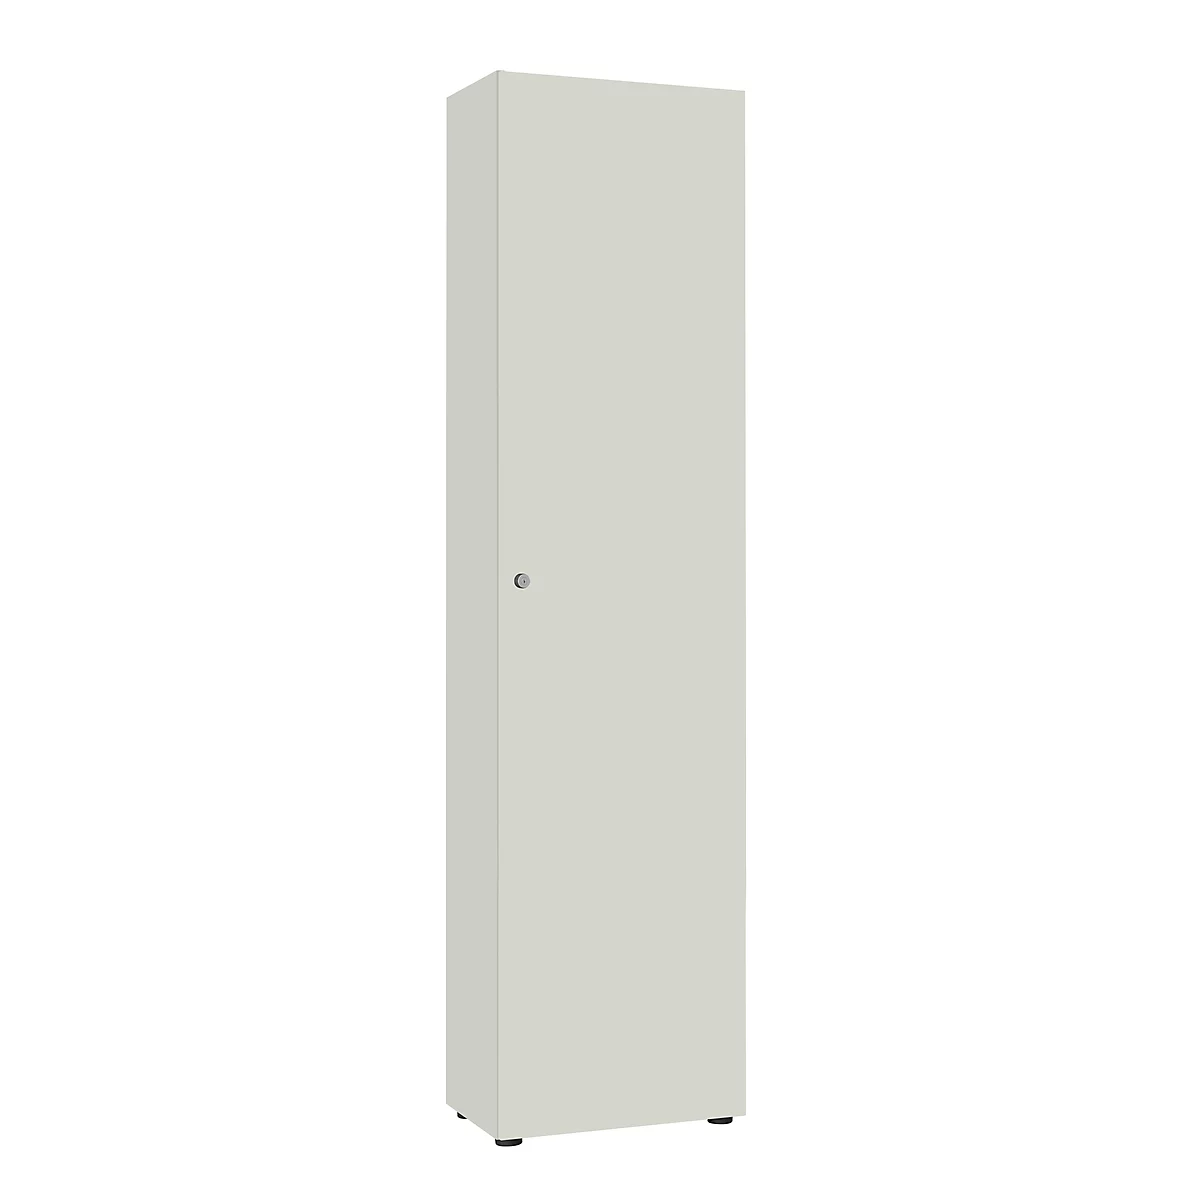 Armarios de puerta batiente 1 puerta, sin cara frontal insonorizante, An 600 x Al 2300 mm, gris luminoso